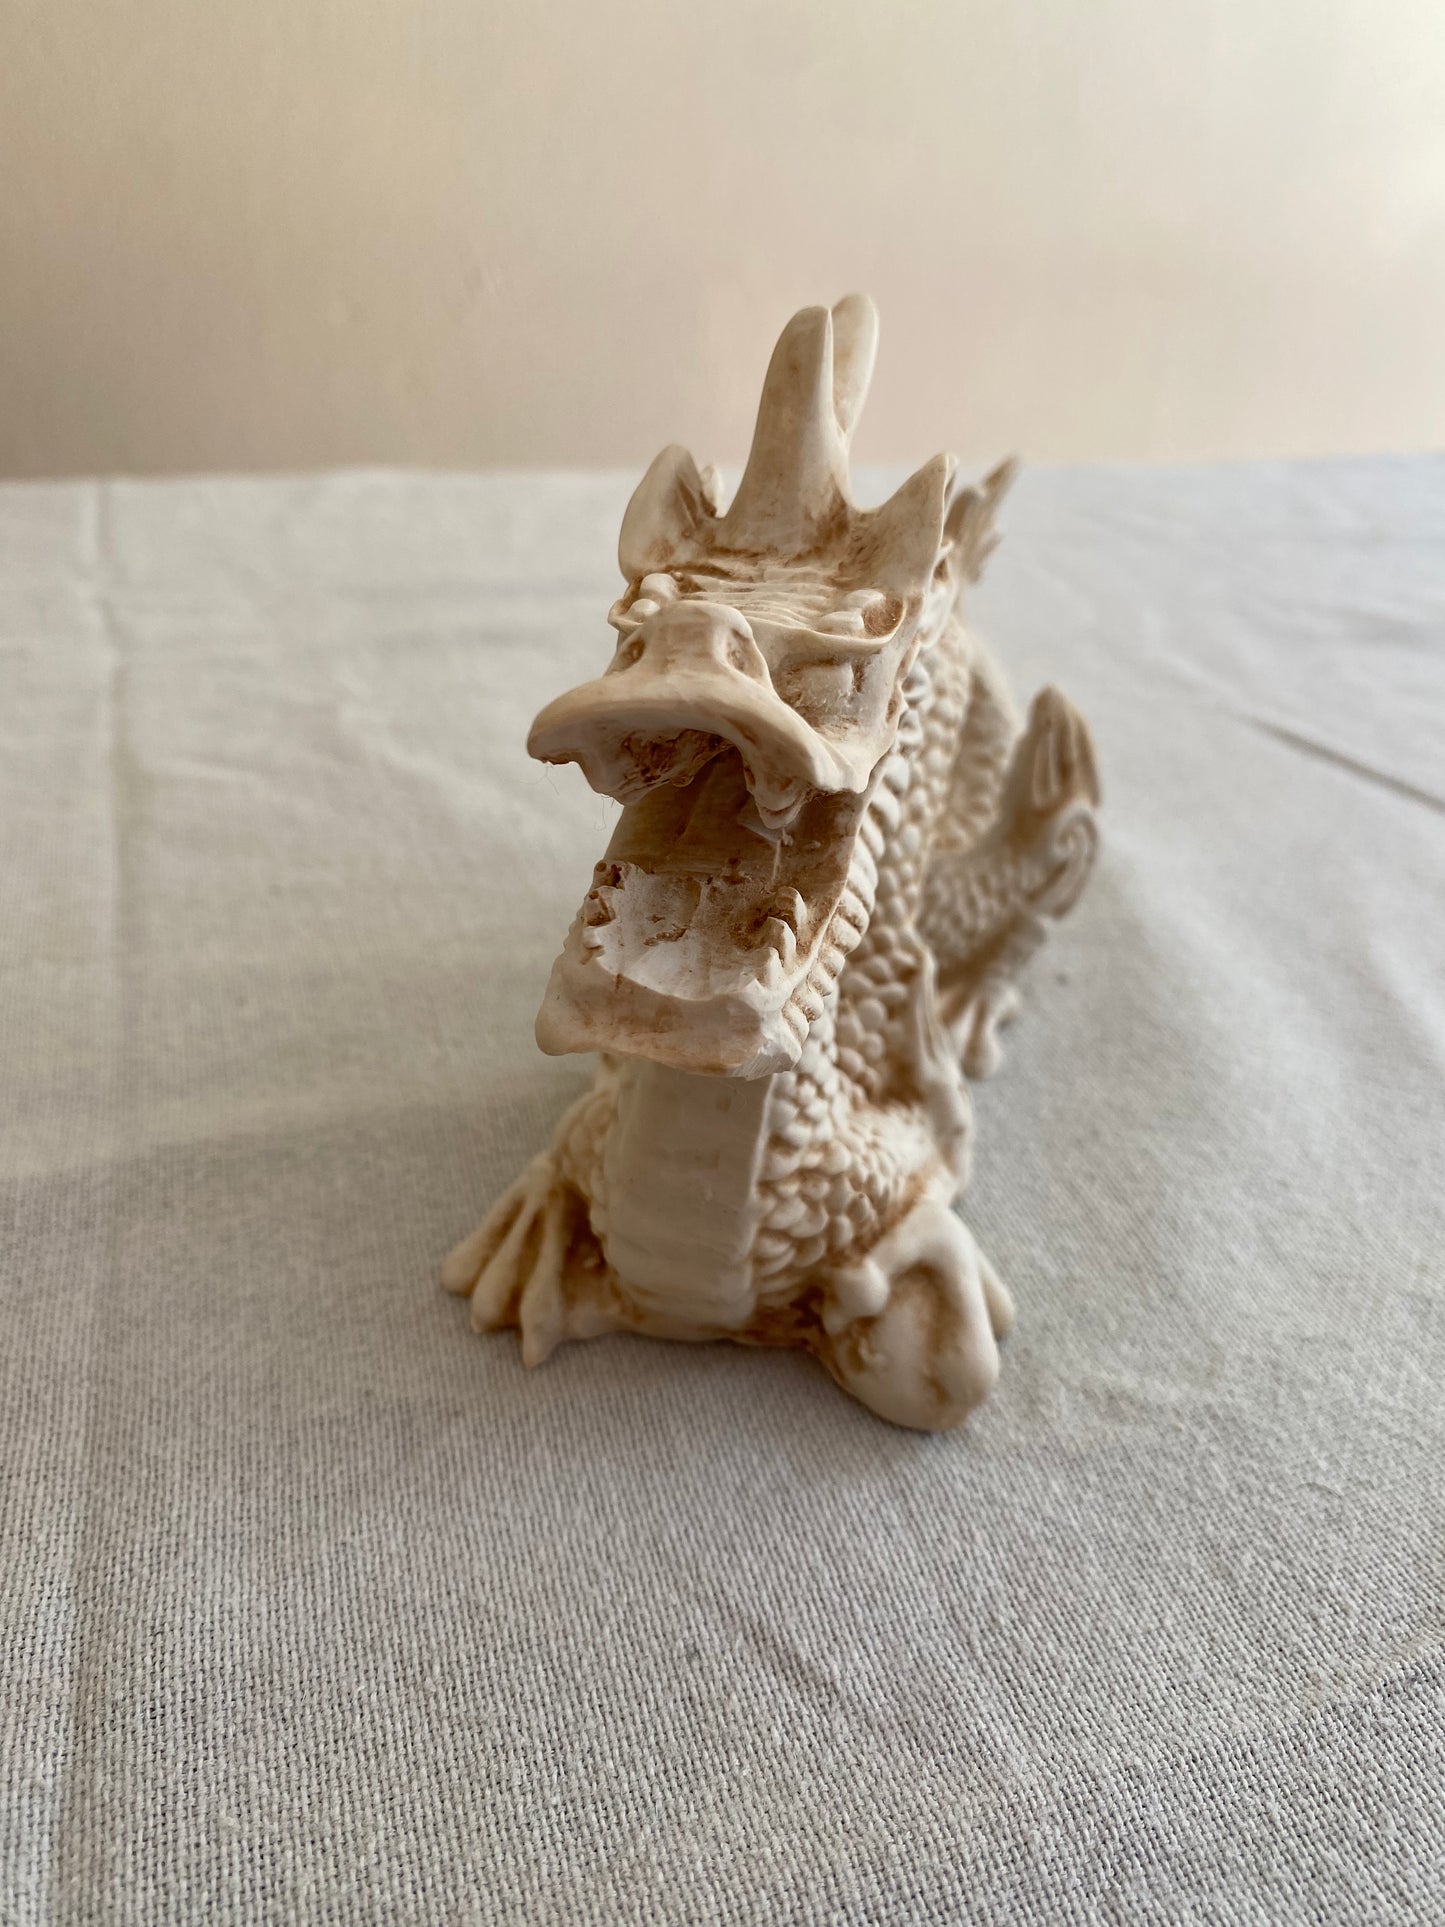 Dragon Statue - 10cm